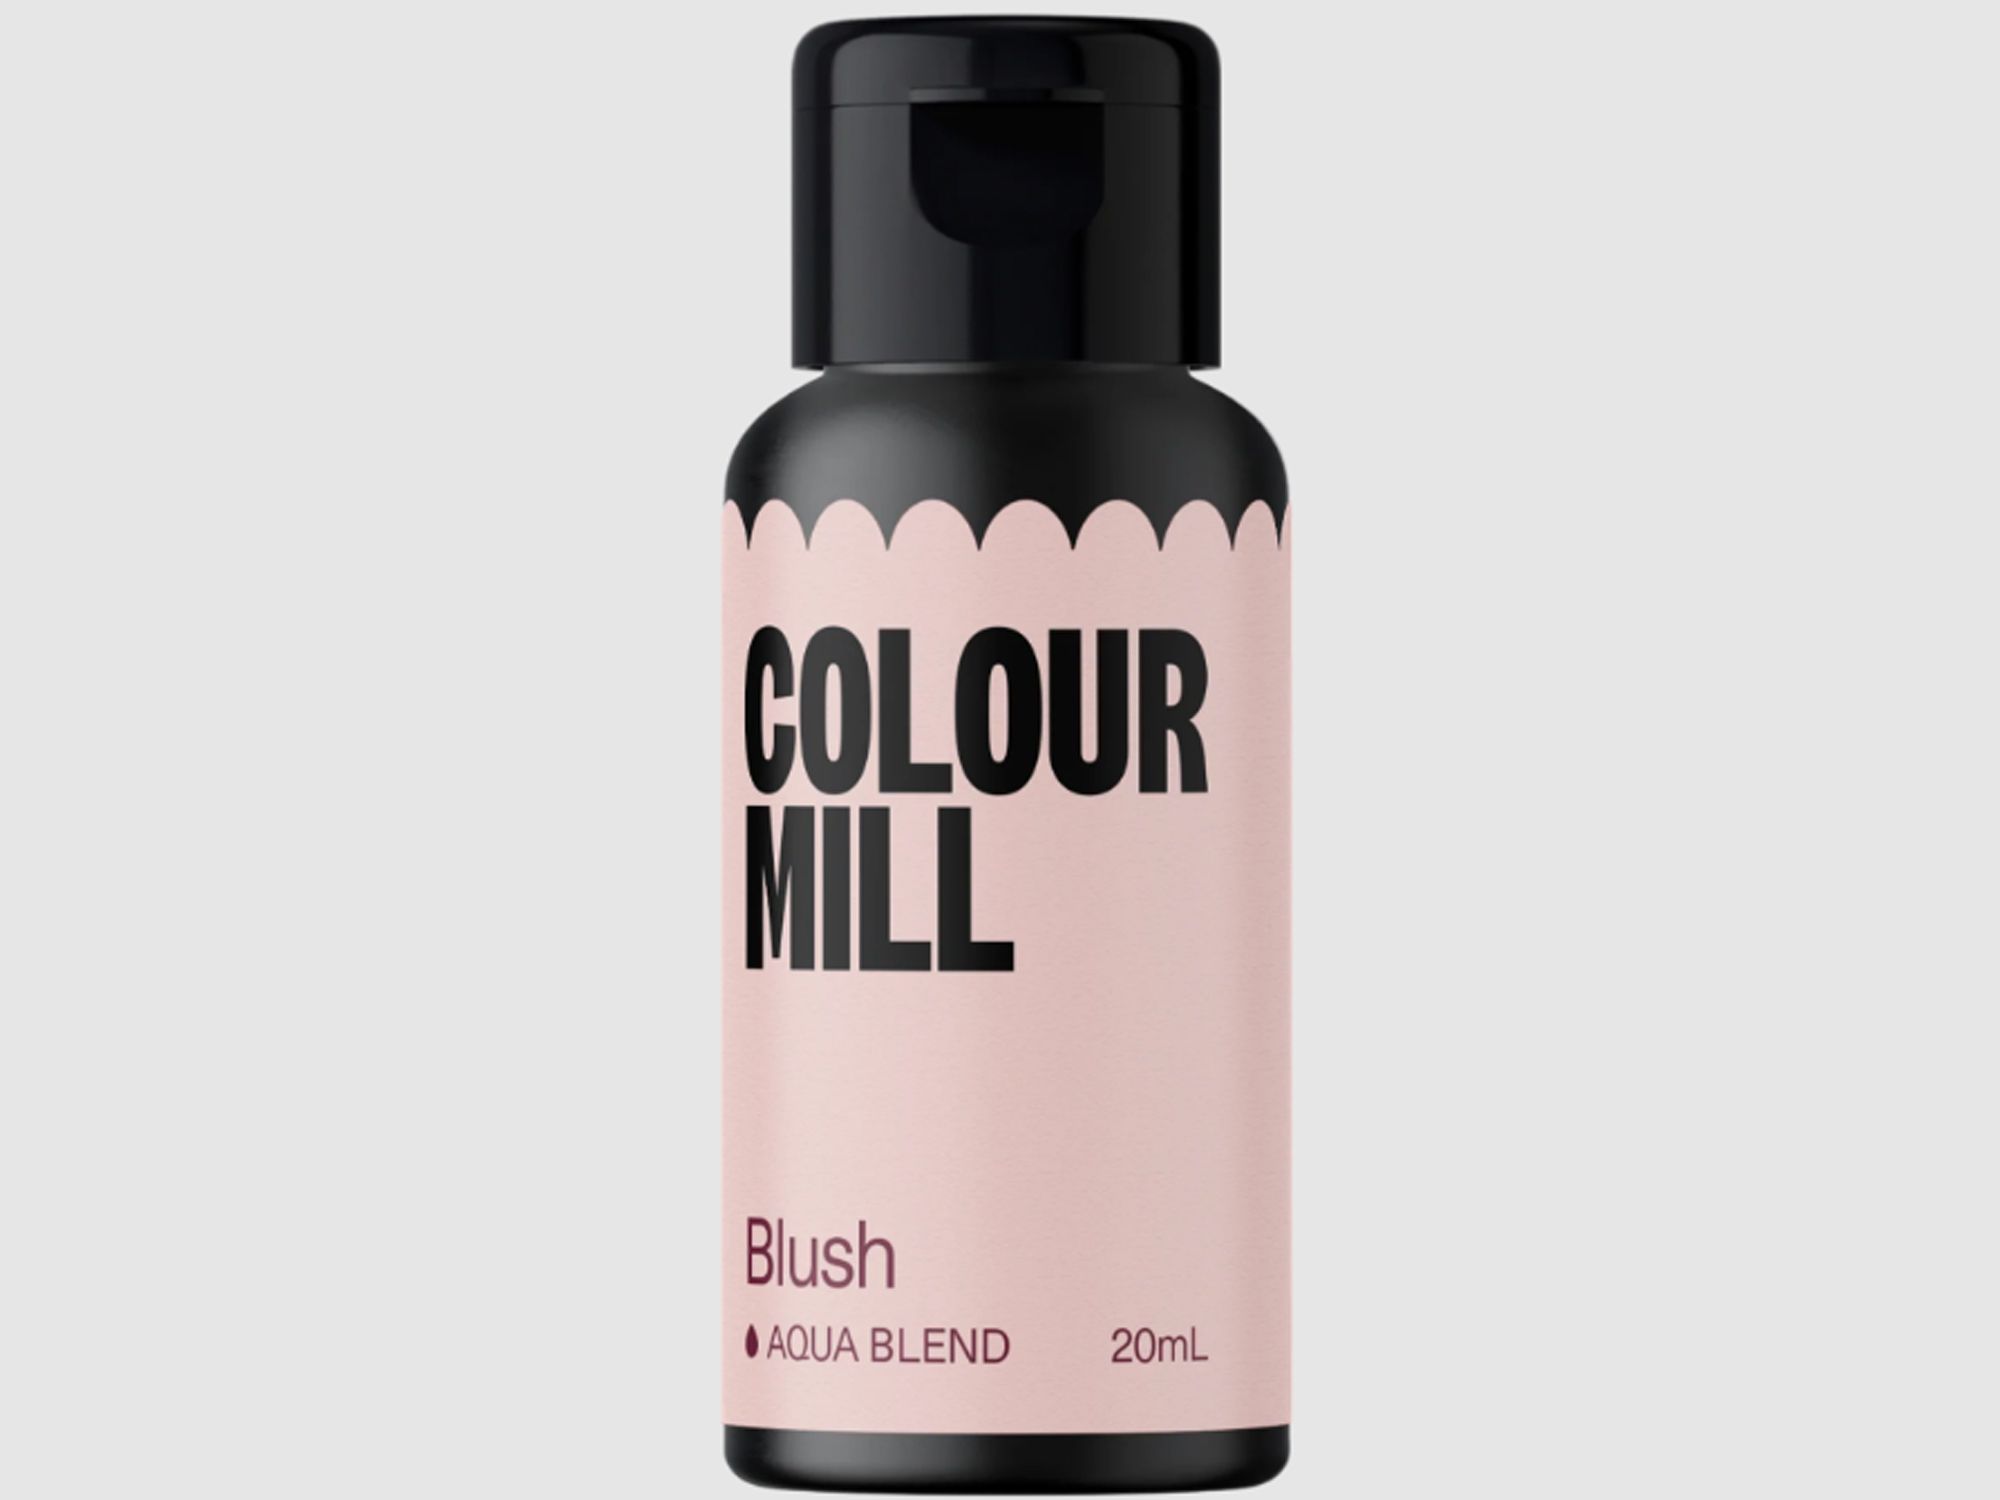 Colour Mill Blush (Aqua Blend) 20ml